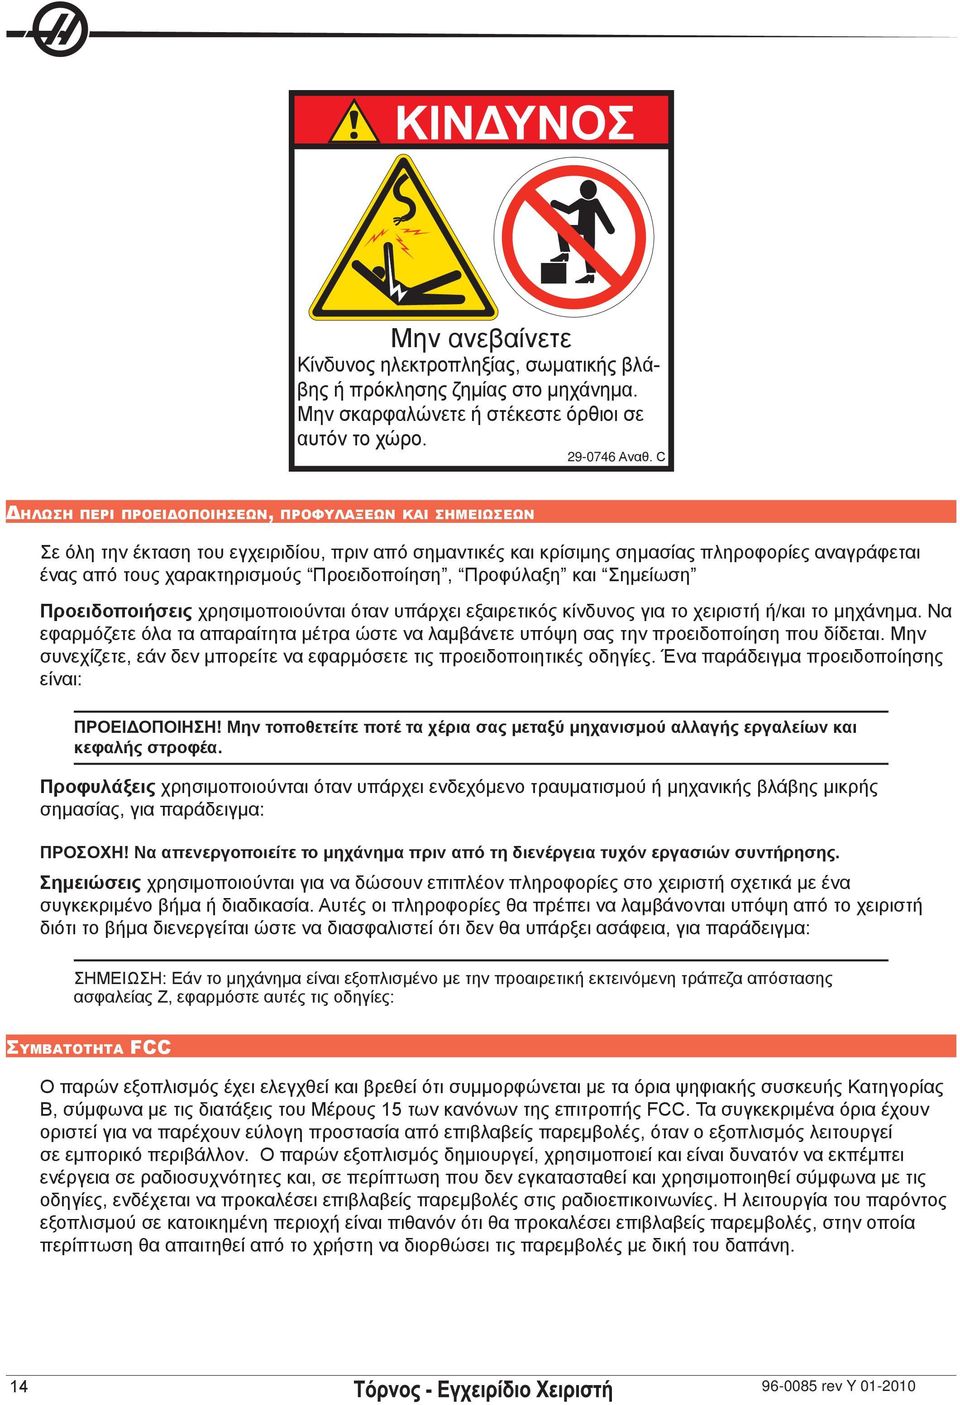 Προειδοποίηση, Προφύλαξη και Σημείωση Προειδοποιήσεις χρησιμοποιούνται όταν υπάρχει εξαιρετικός κίνδυνος για το χειριστή ή/και το μηχάνημα.